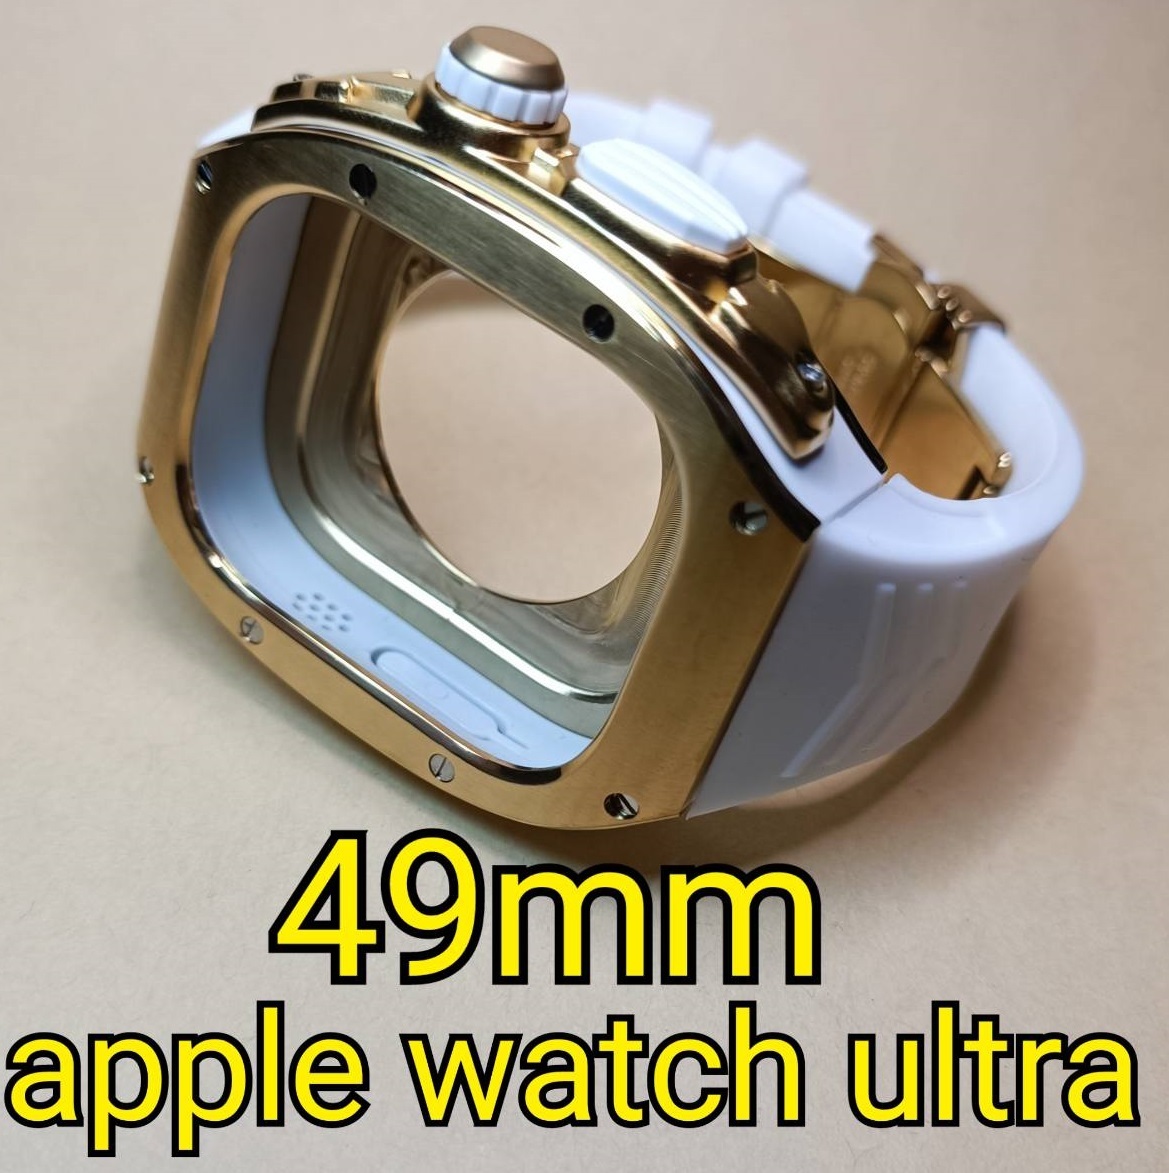 格安販売中 ケース メタル アップルウォッチウルトラ ultra watch